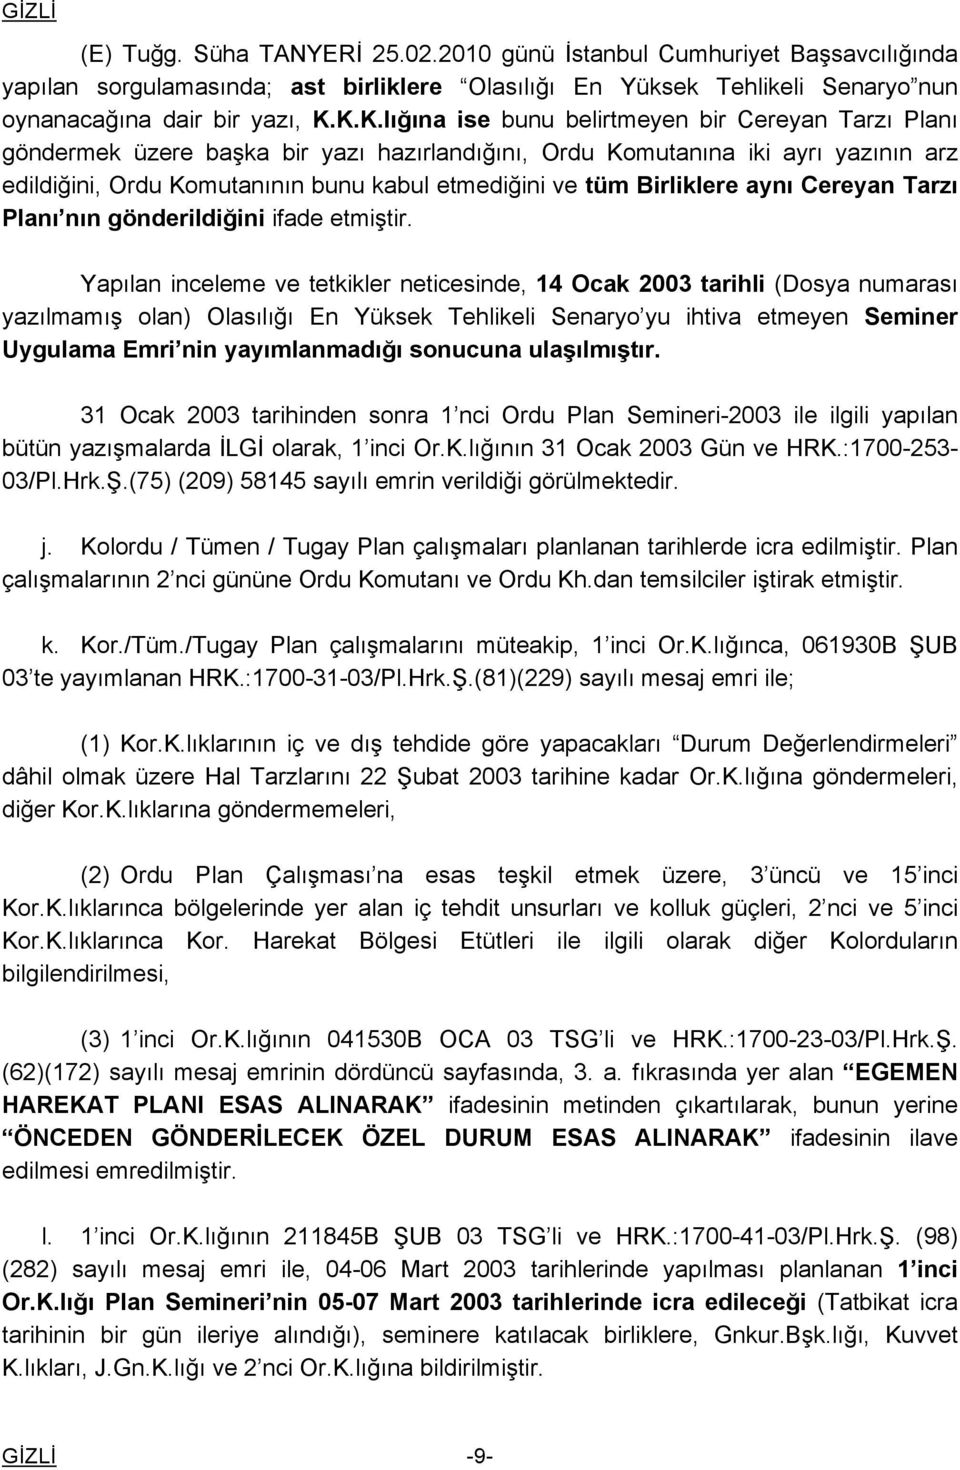 Birliklere aynı Cereyan Tarzı Planı nın gönderildiğini ifade etmiştir.